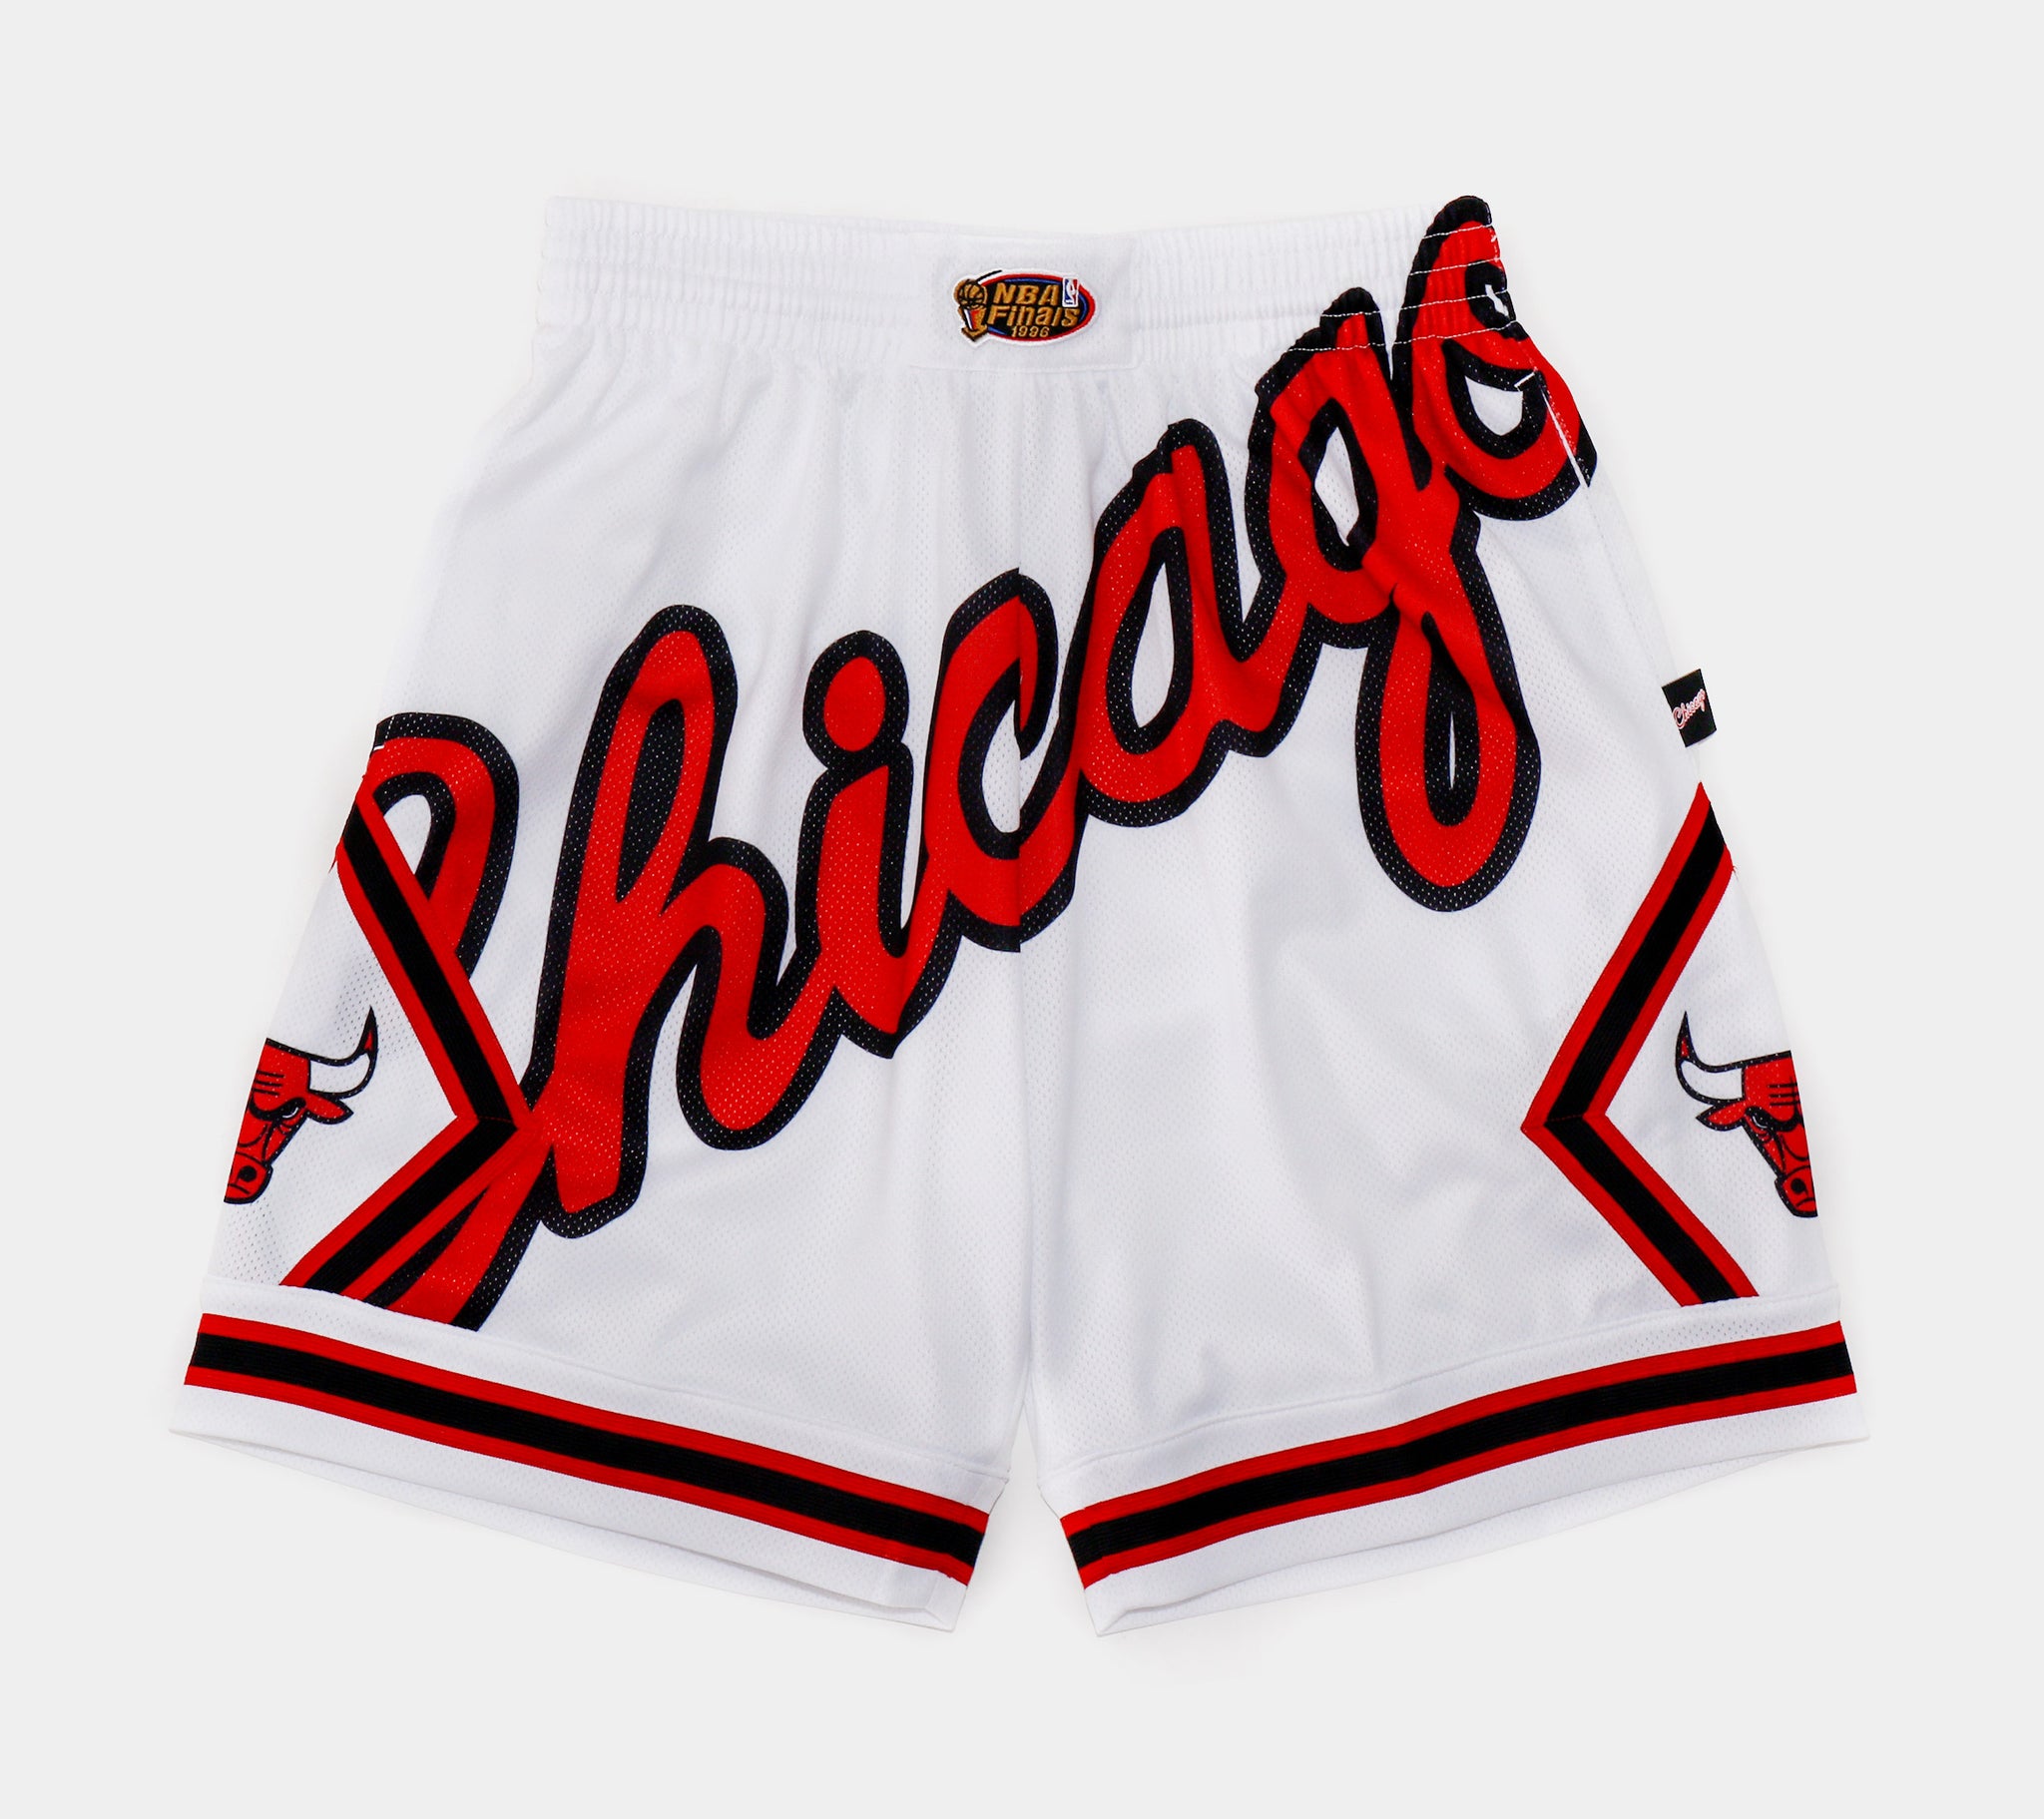 Mitchell & Ness Men's Shorts - White - XL